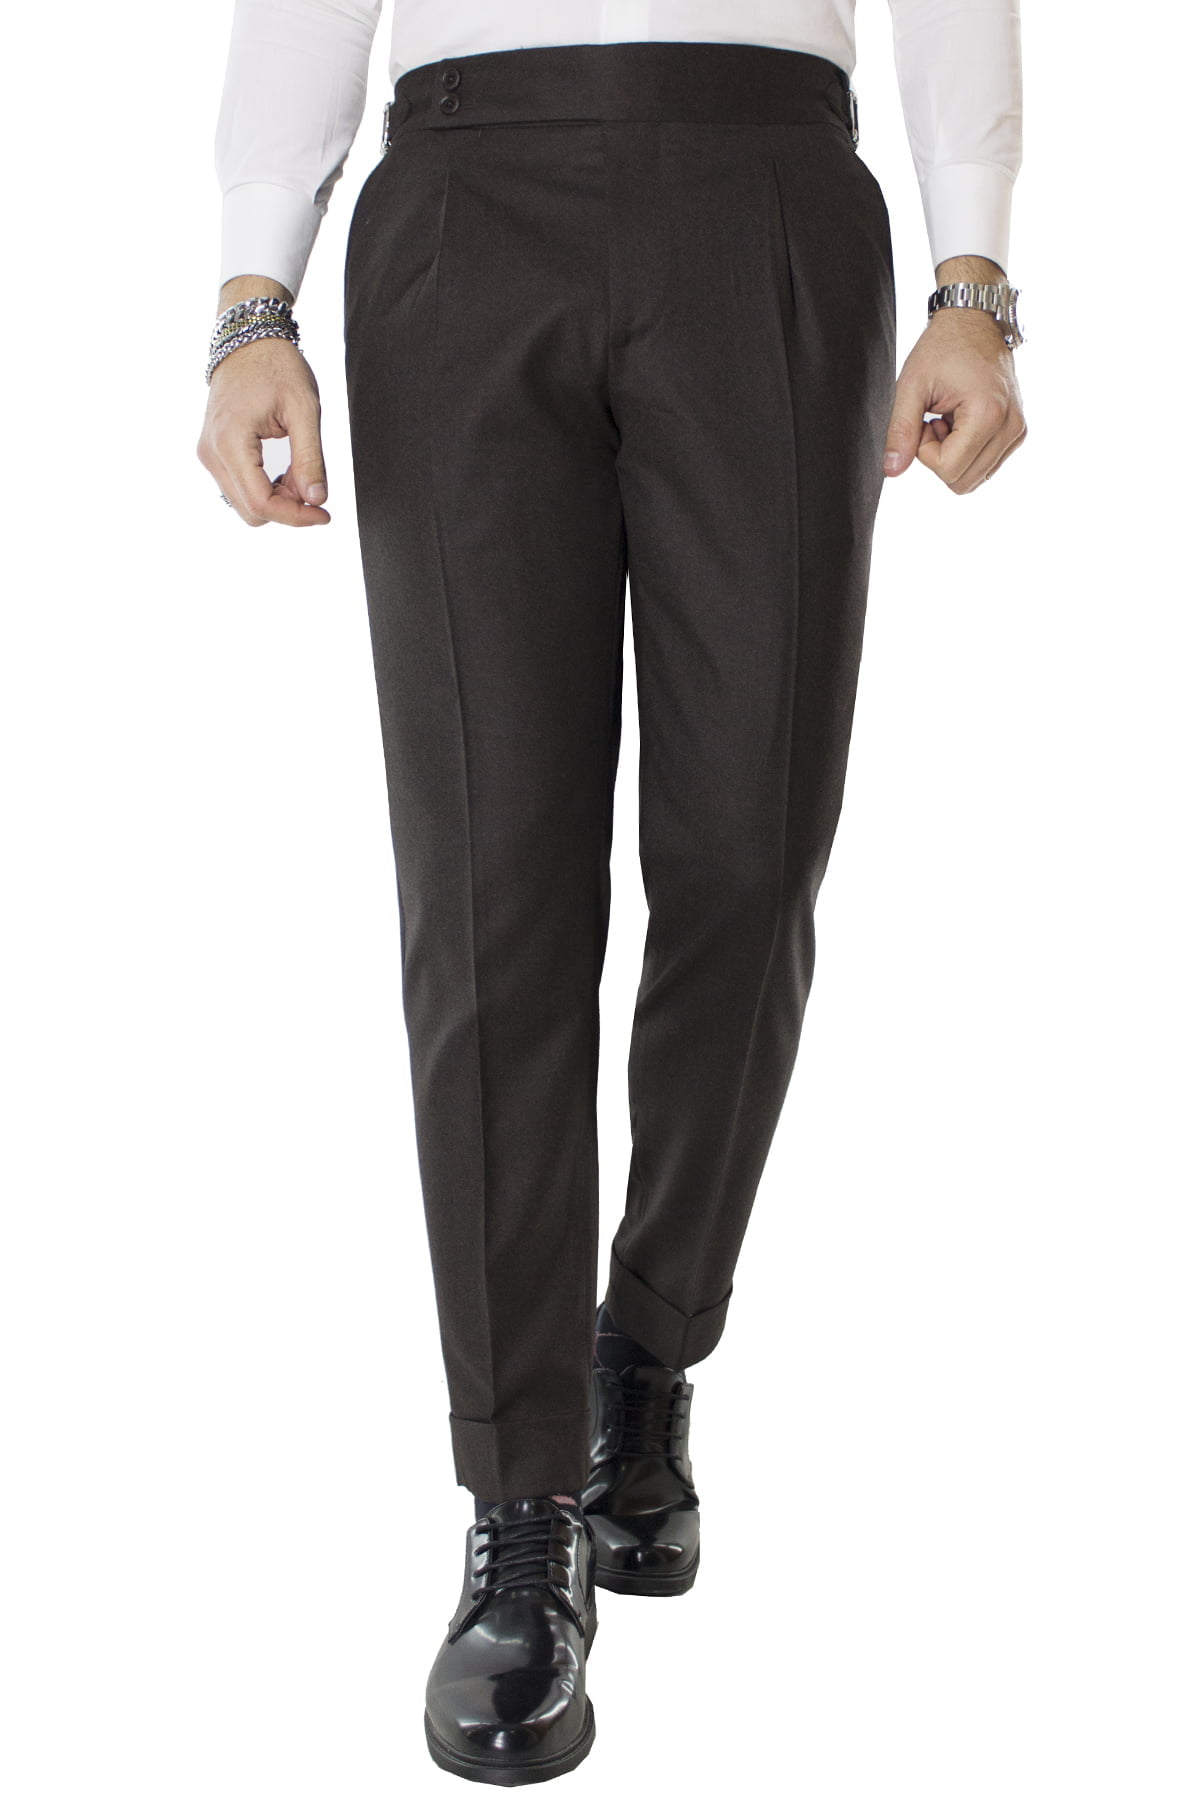 Pantalone uomo marrone in lana vita alta con pinces e fibbie laterali vitale barberis canonico